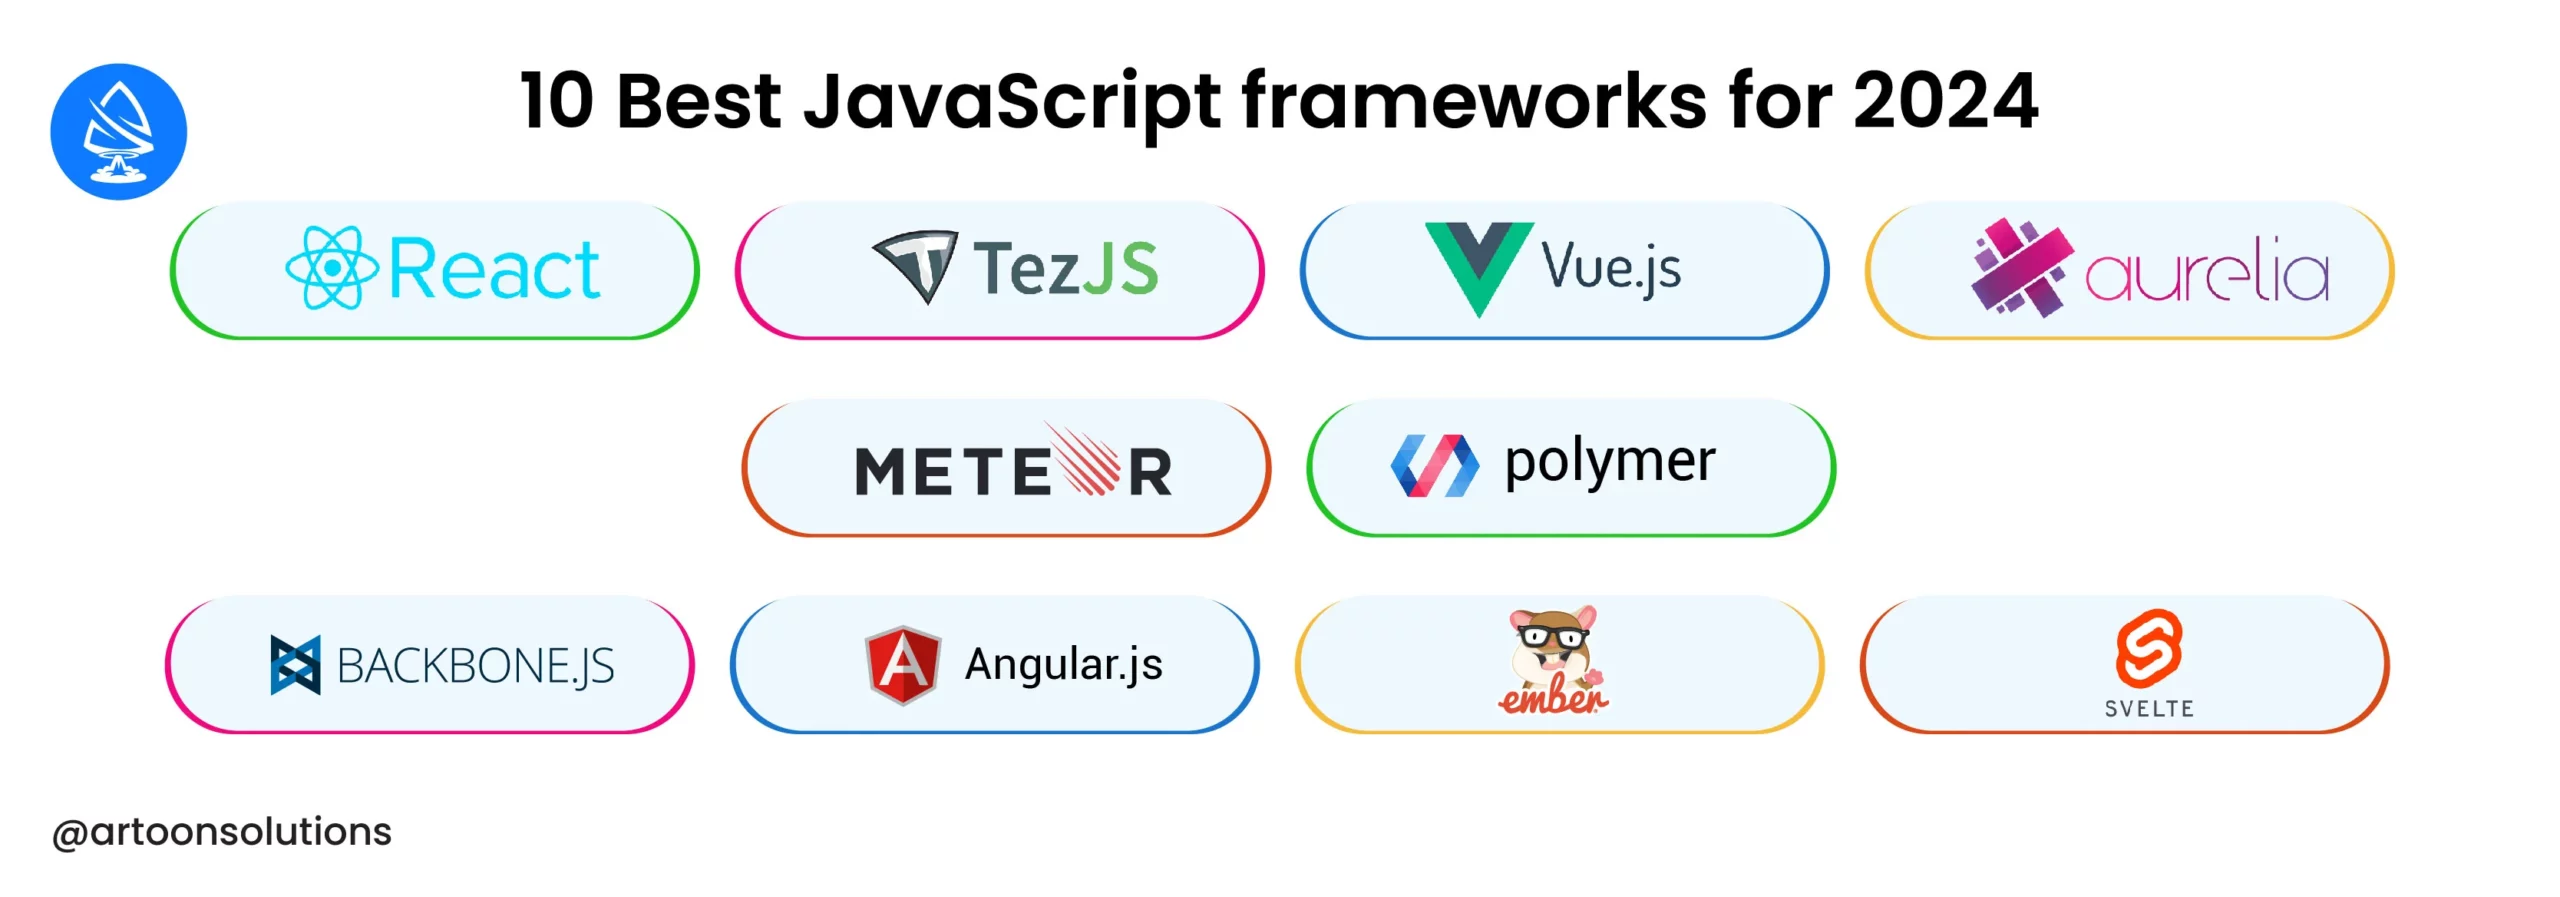 10 Best JavaScript frameworks for 2024